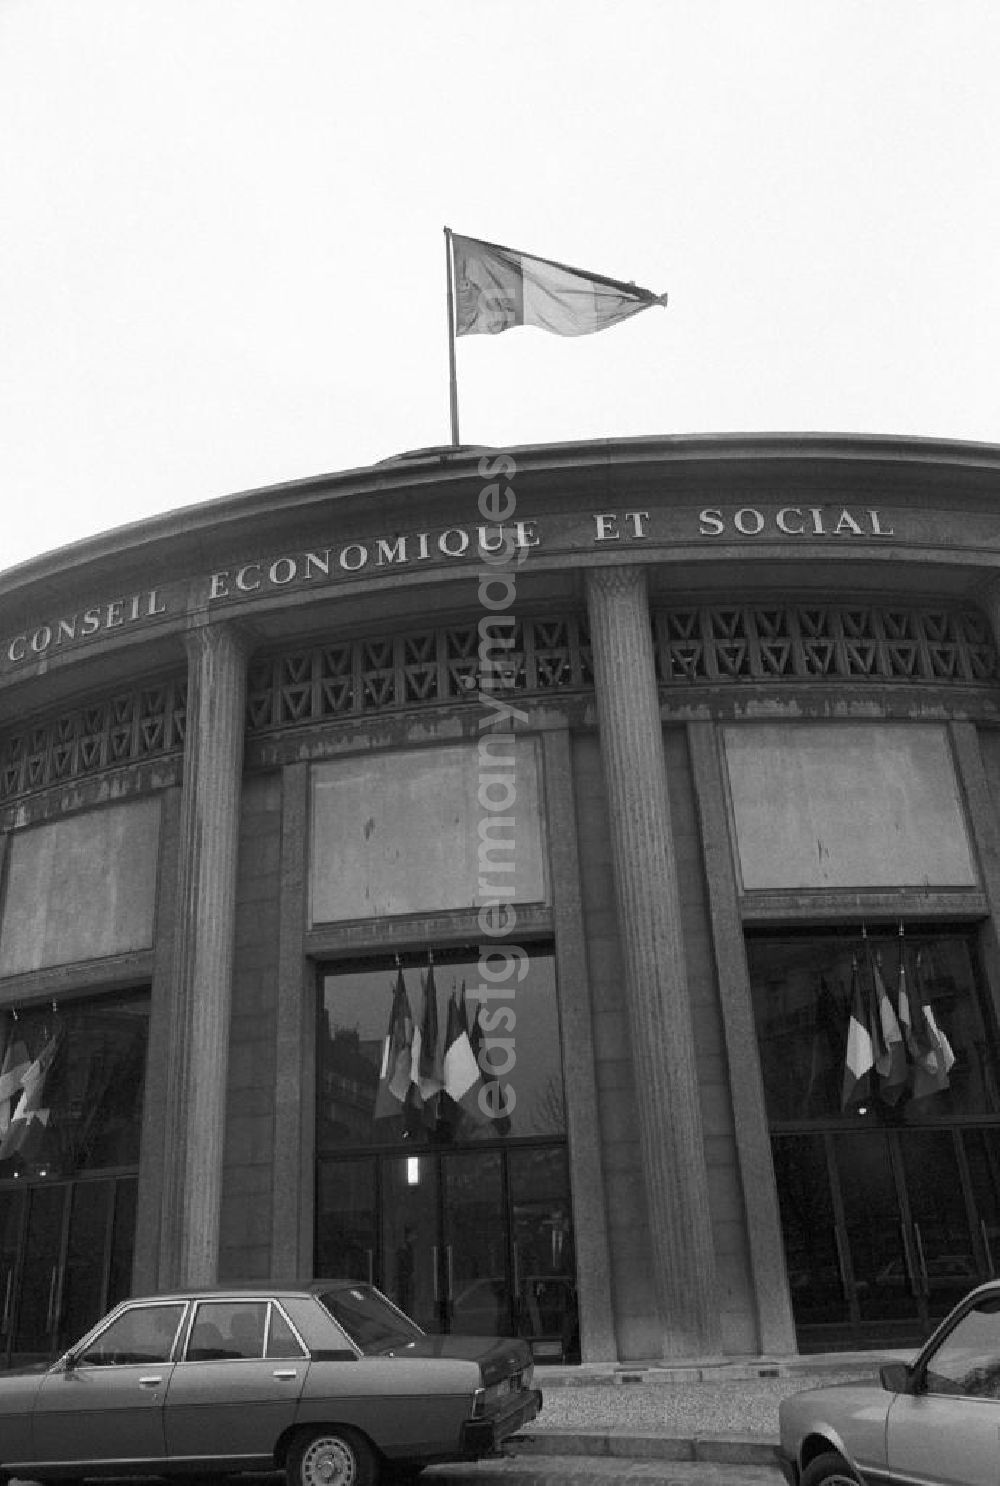 Paris: Conseil Economique et Social (Rat für Wirtschaft und Soziales) mit Beflaggung anläßlich des Staatsbesuchs von Erich Honecker in Paris.